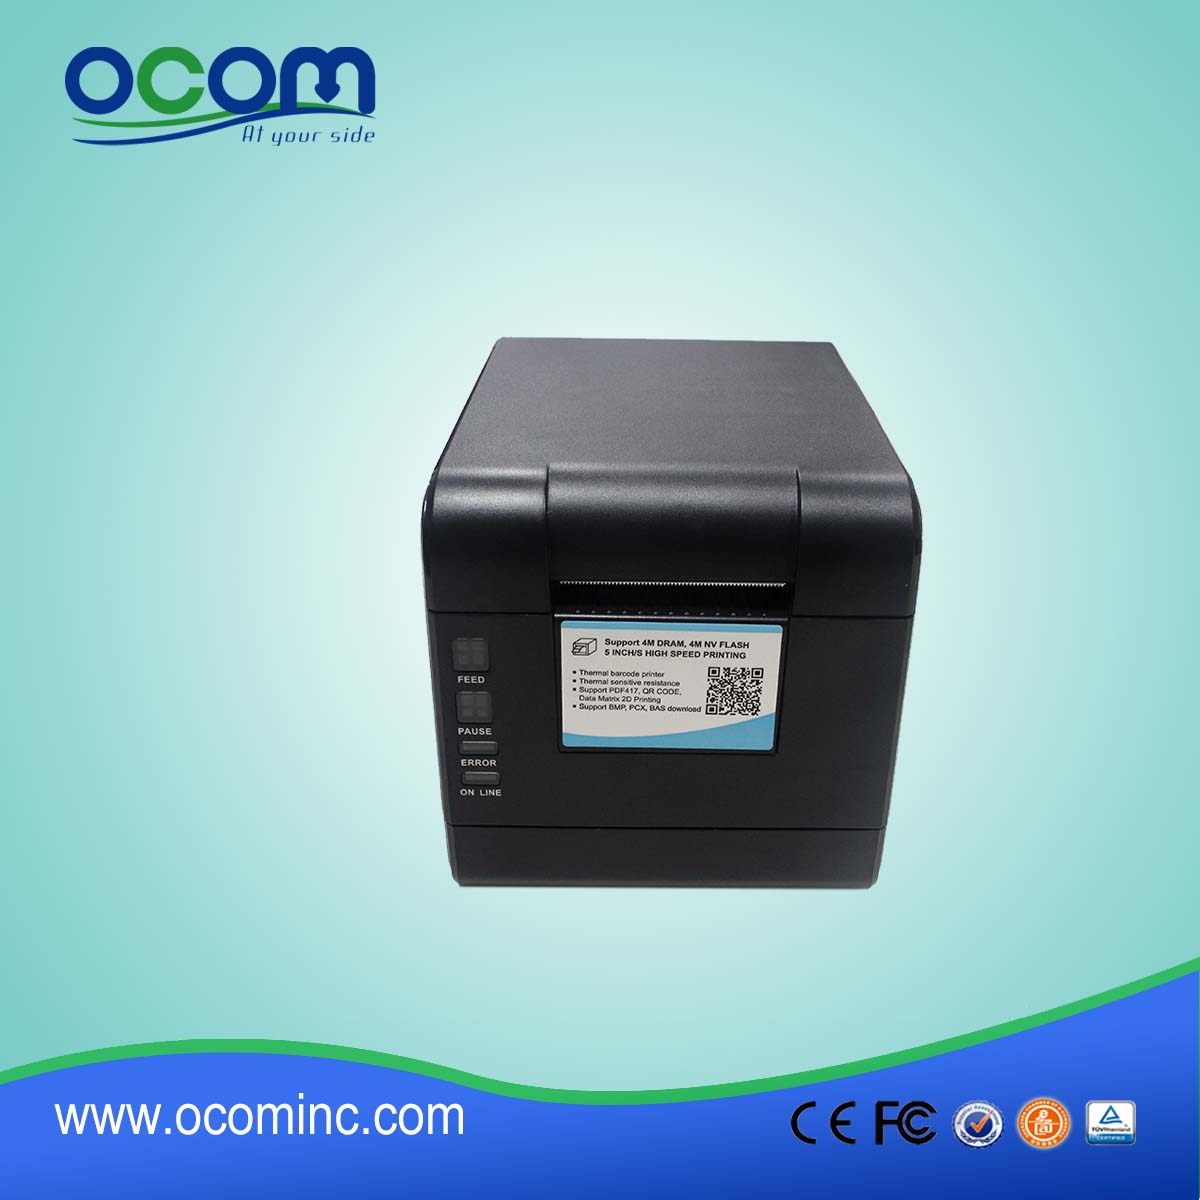 OCBP-006-U 2-дюймовый принтер с прямым термопечати